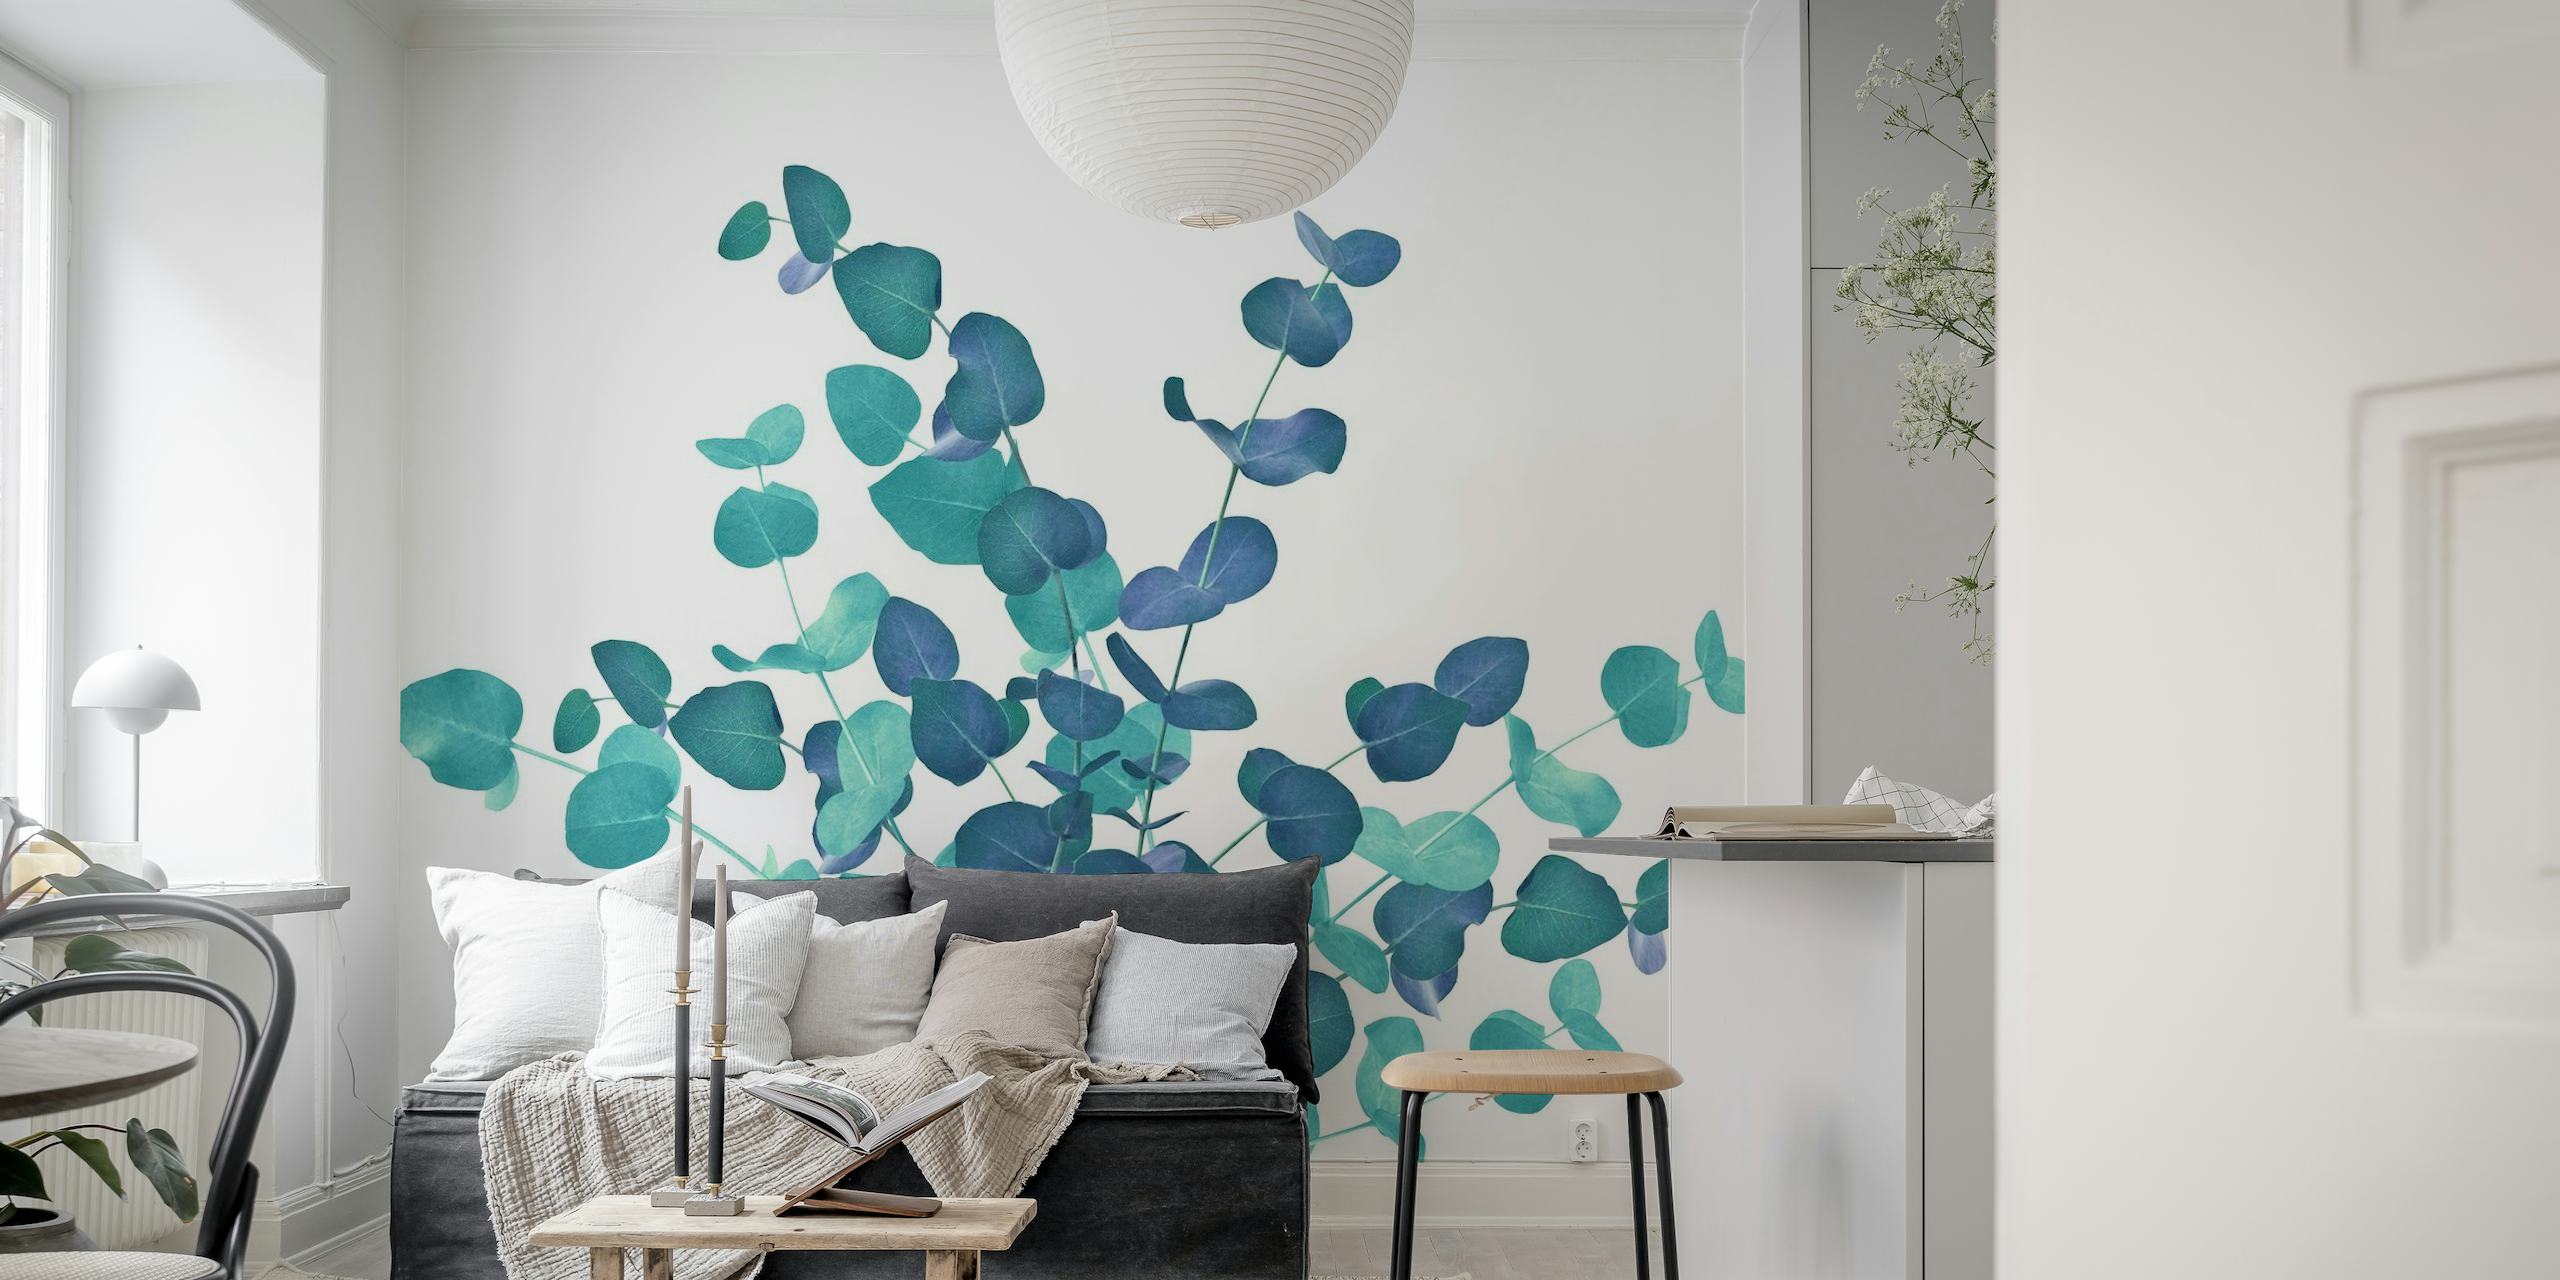 Eucalyptusbladeren fotobehang in blauwe tinten, waardoor een serene botanische weergave ontstaat